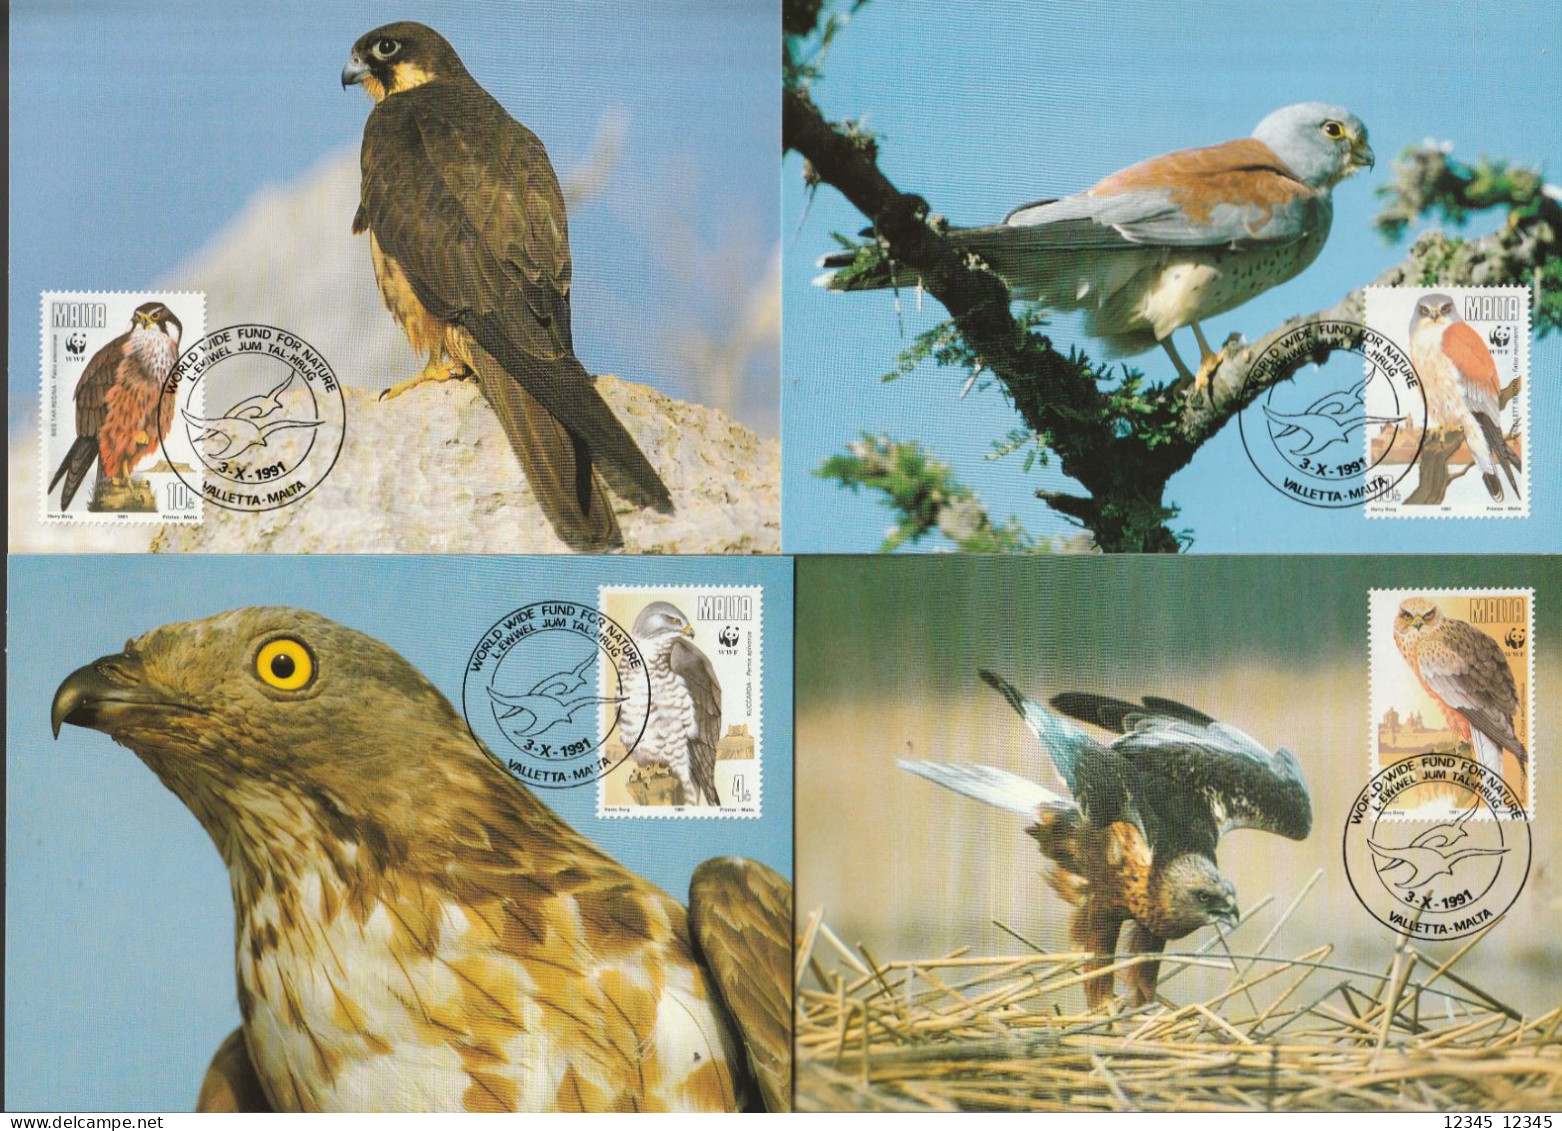 Malta 1991, Maximum Cards Unused, WWF, Birds Of Prey - Malta